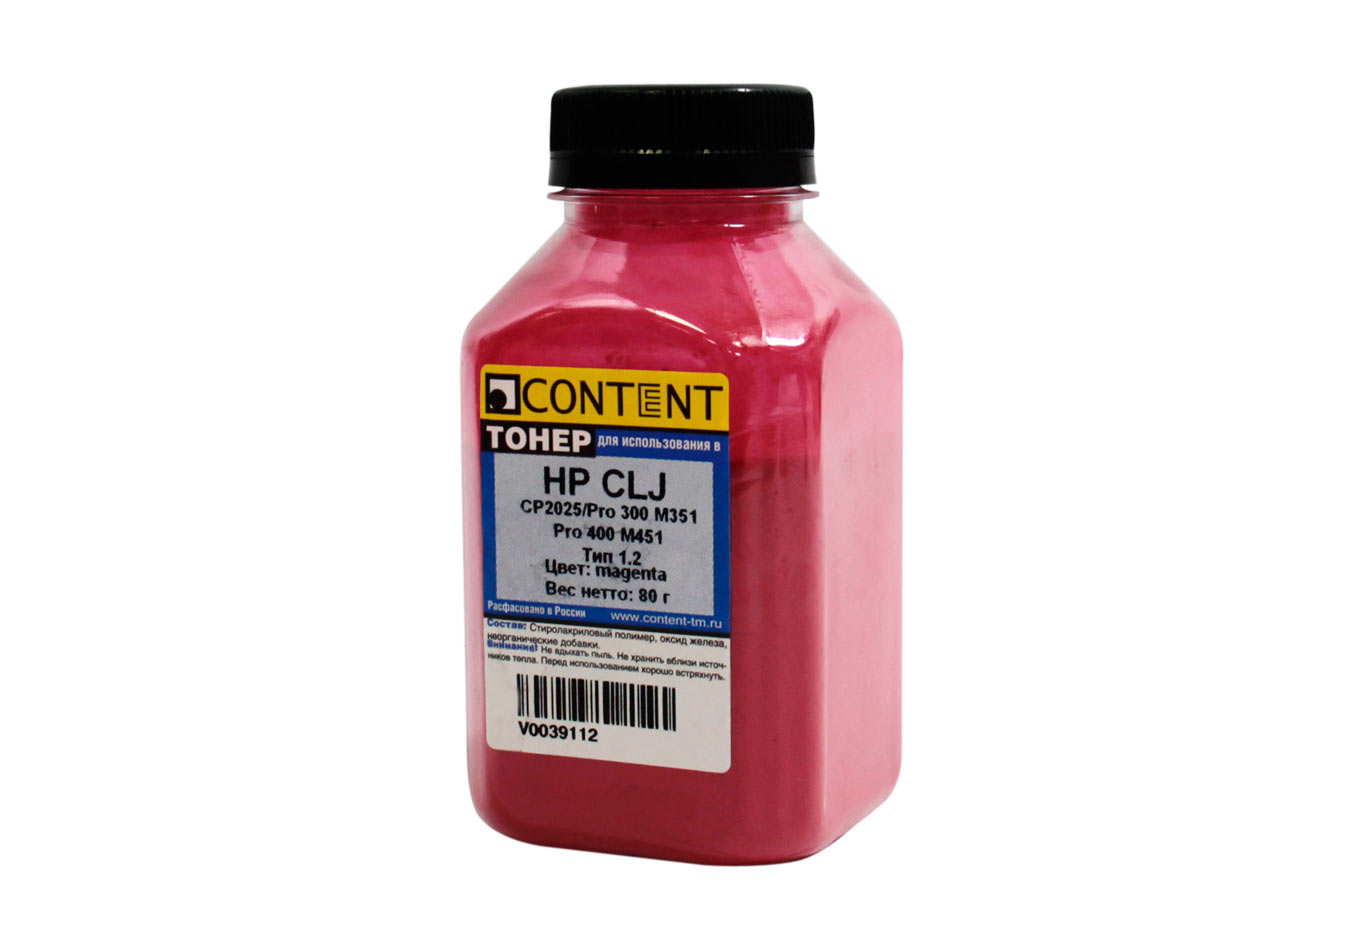 Тонер Content Тип 1.2, бутыль 80 г, пурпурный, совместимый для CLJ CP2025, Pro 300 M351, 400 M451 (V0039112)